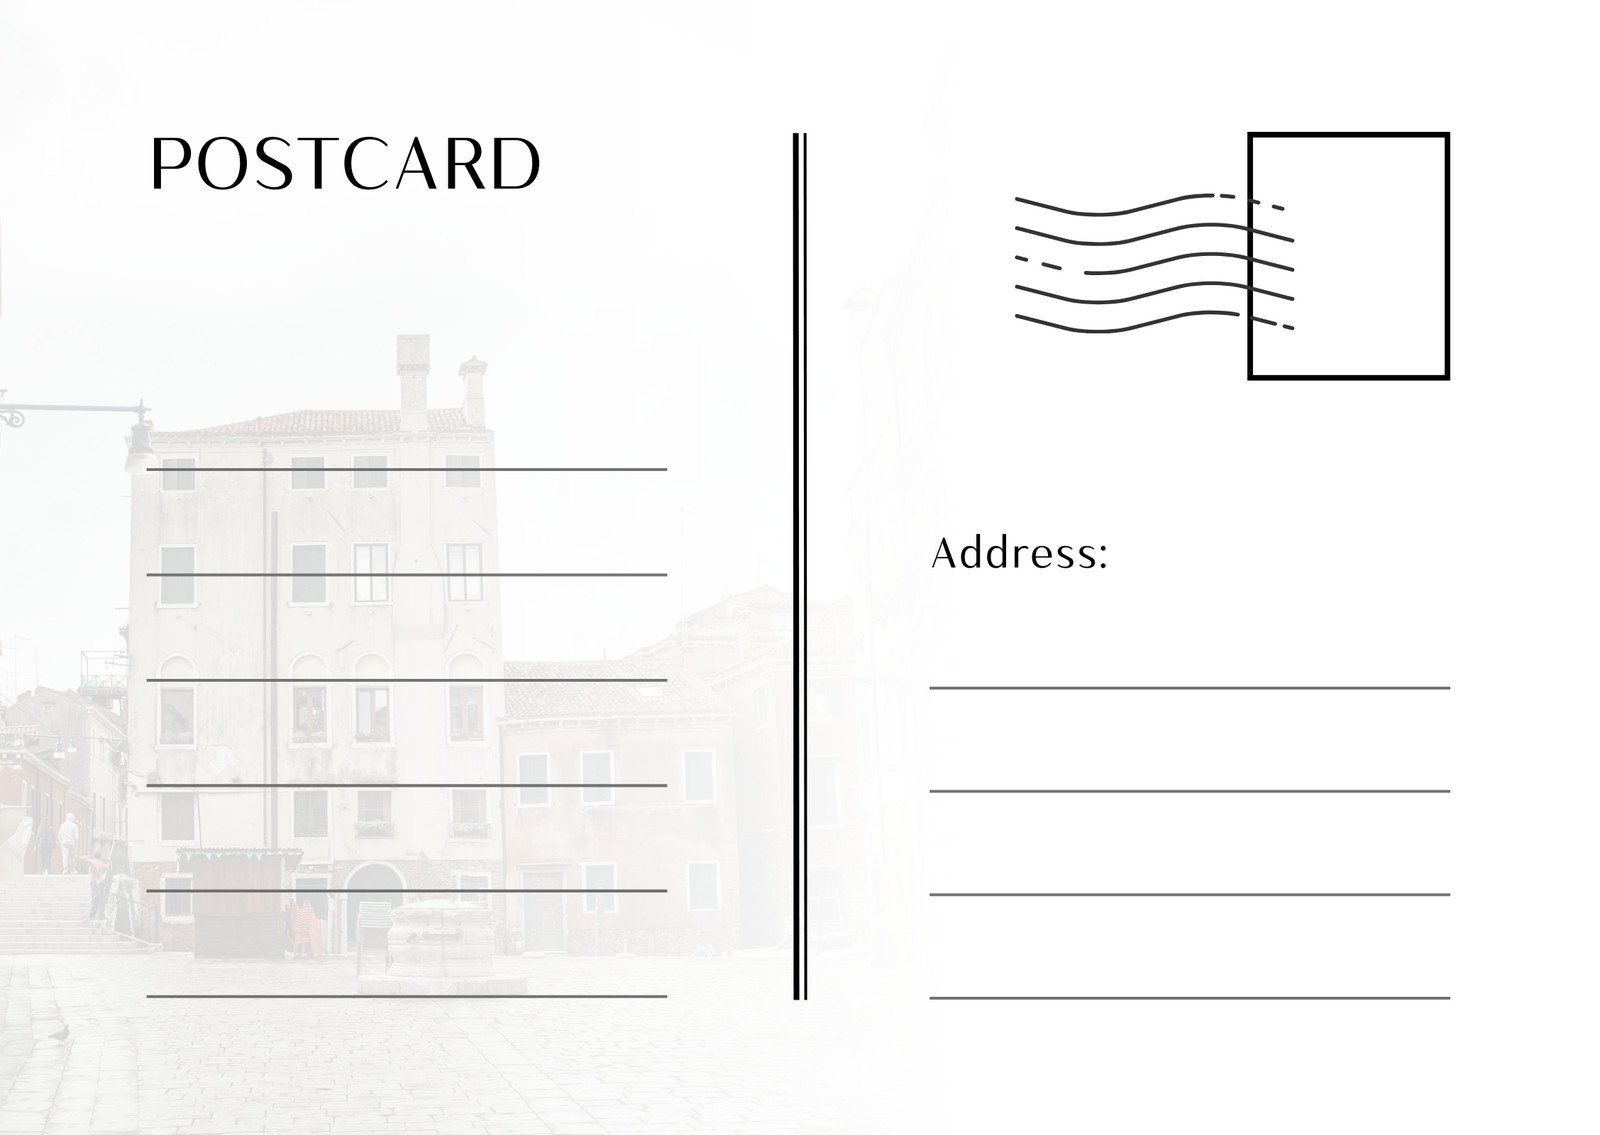 Postcard. Postal card illustration for your design. Travel card